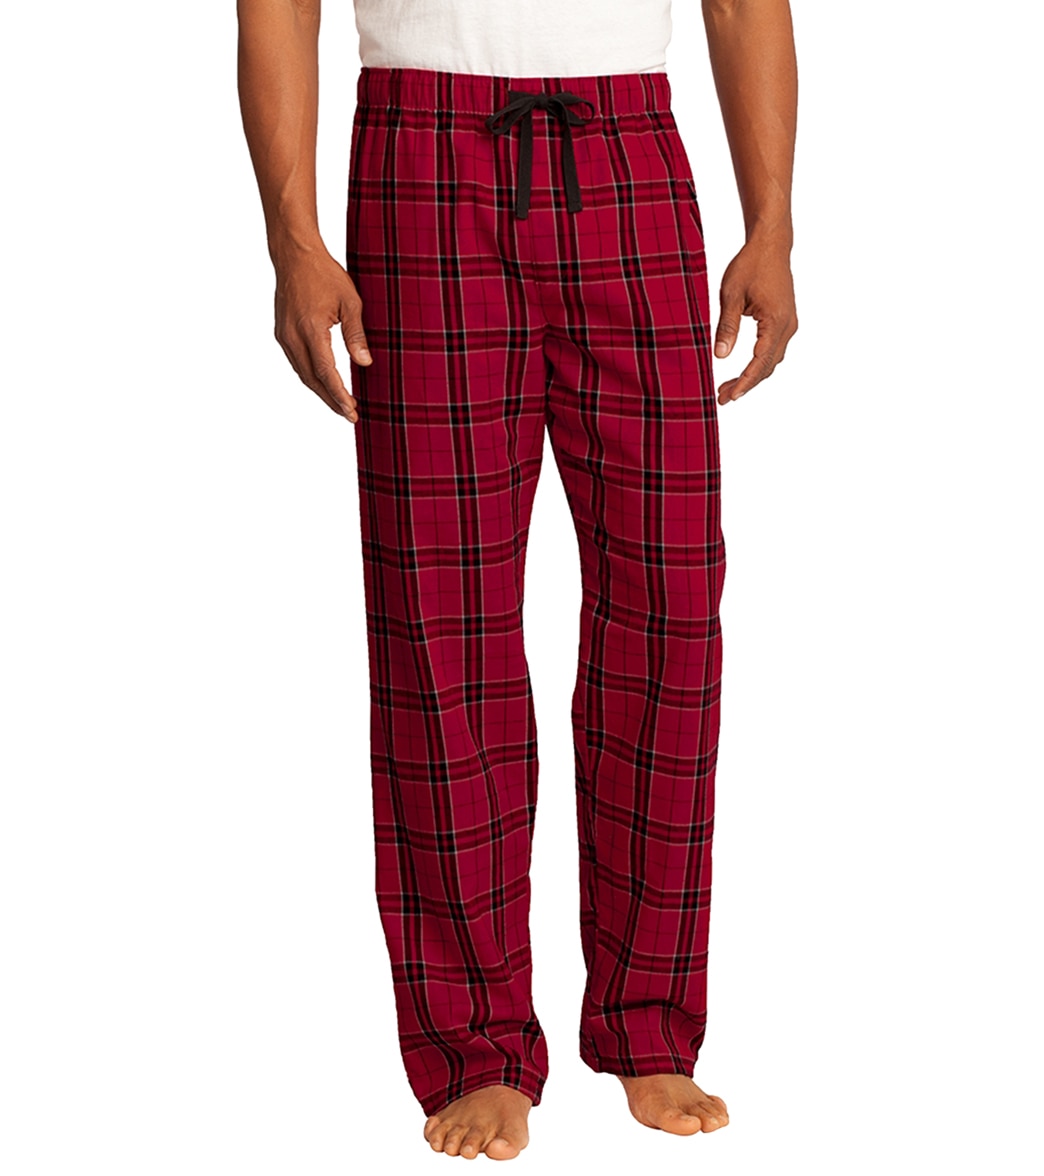 Women's Flannel Plaid Pants - Red Xl Cotton - Swimoutlet.com